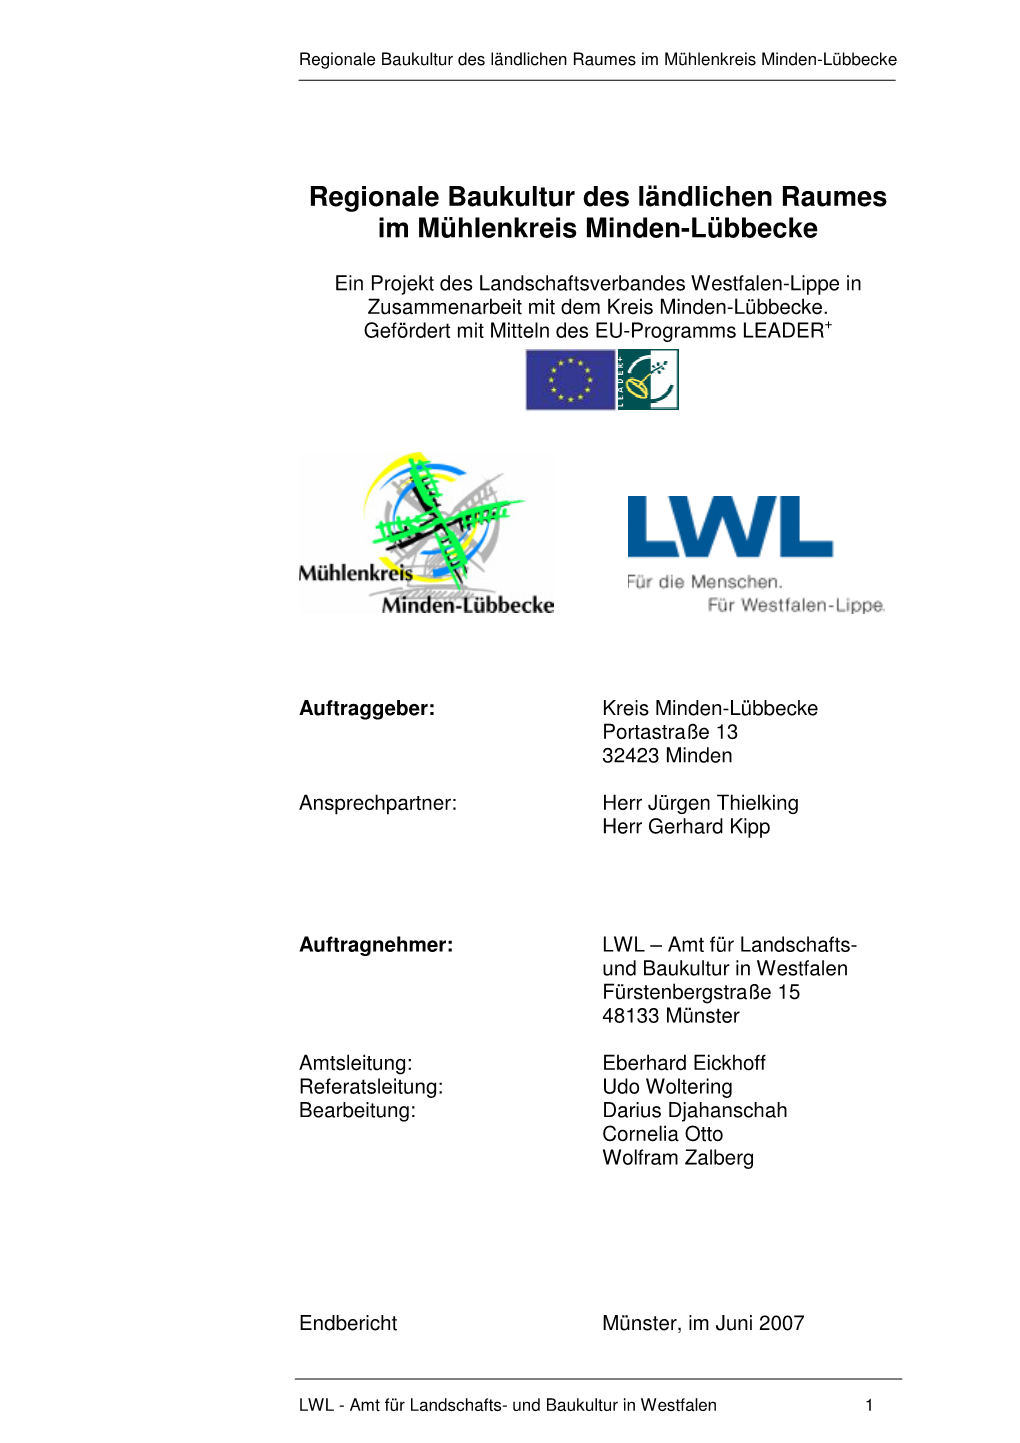 Regionale Baukultur Im Mühlenkreis Minden-Lübbecke